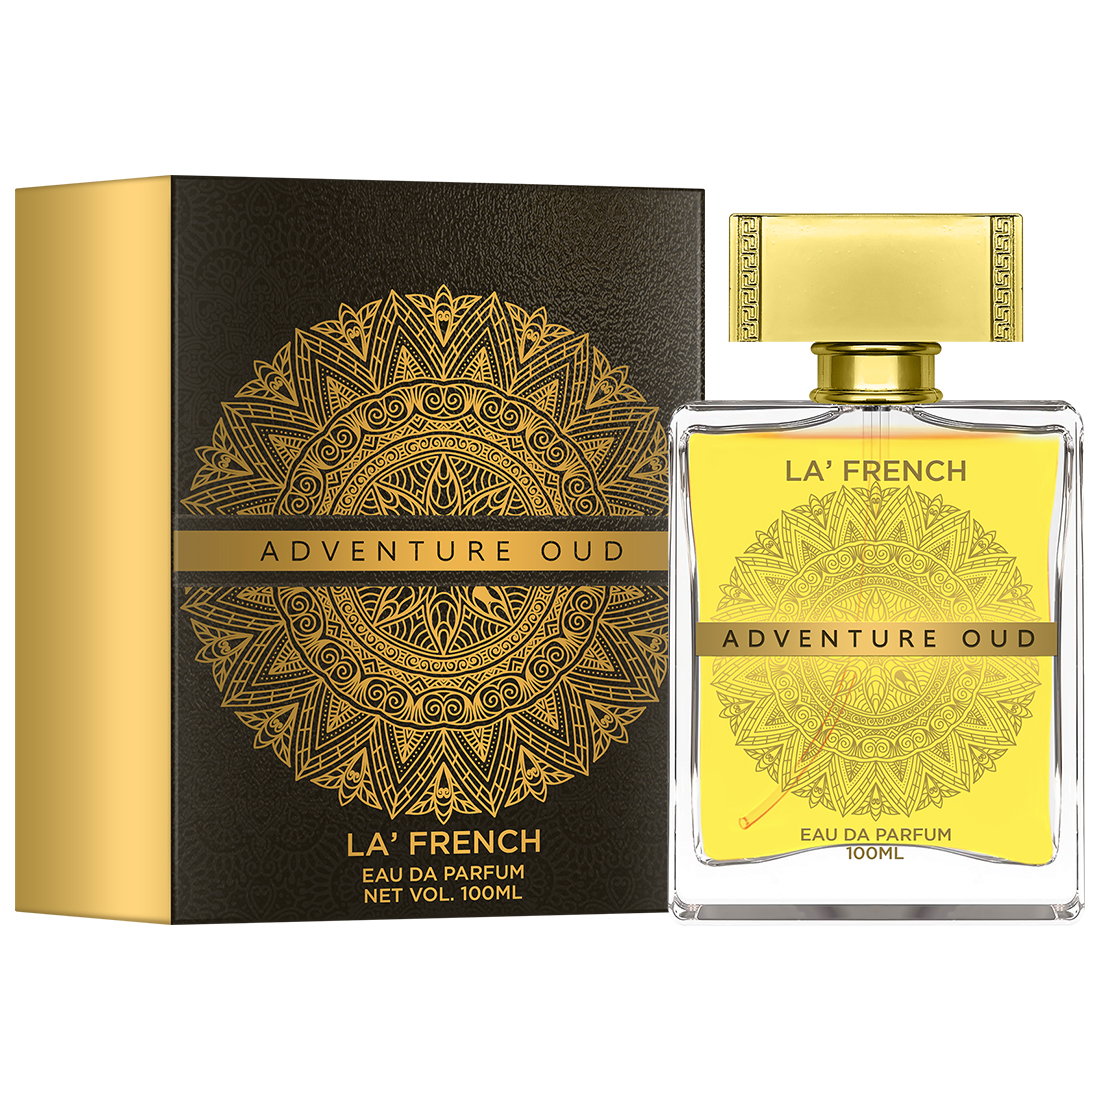 La’ French Adventure Oud Eau de Parfum